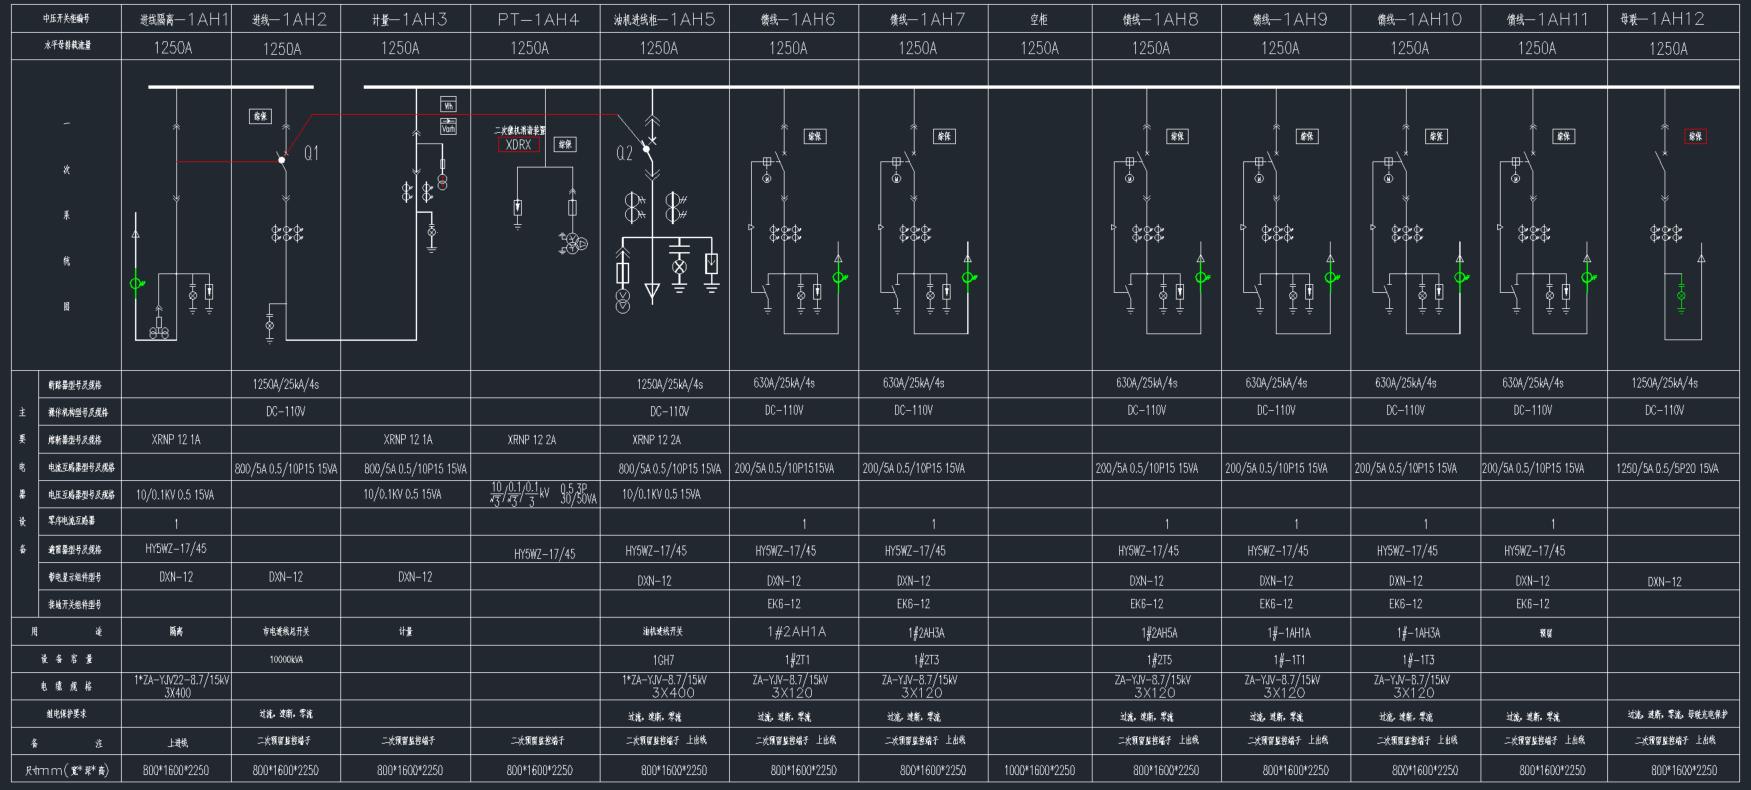 Acrel-2000Z电力监控系统在某数据中应用